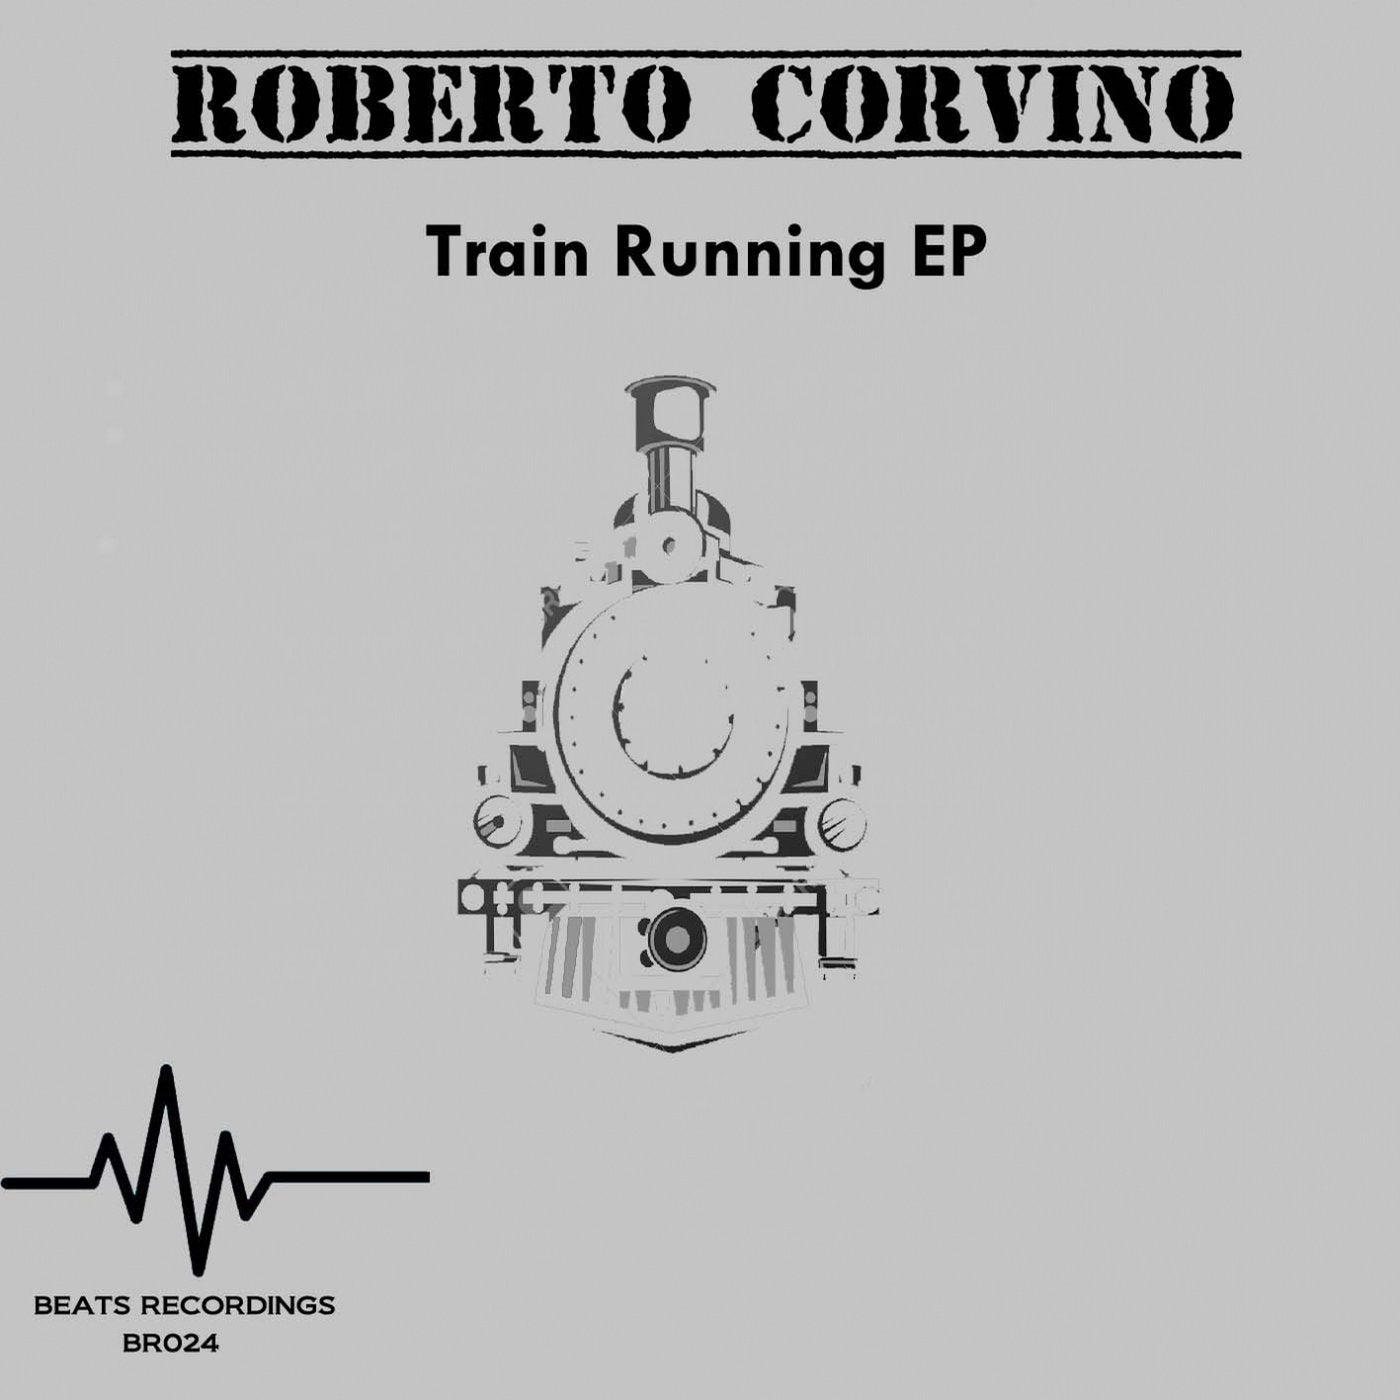 Train Running EP